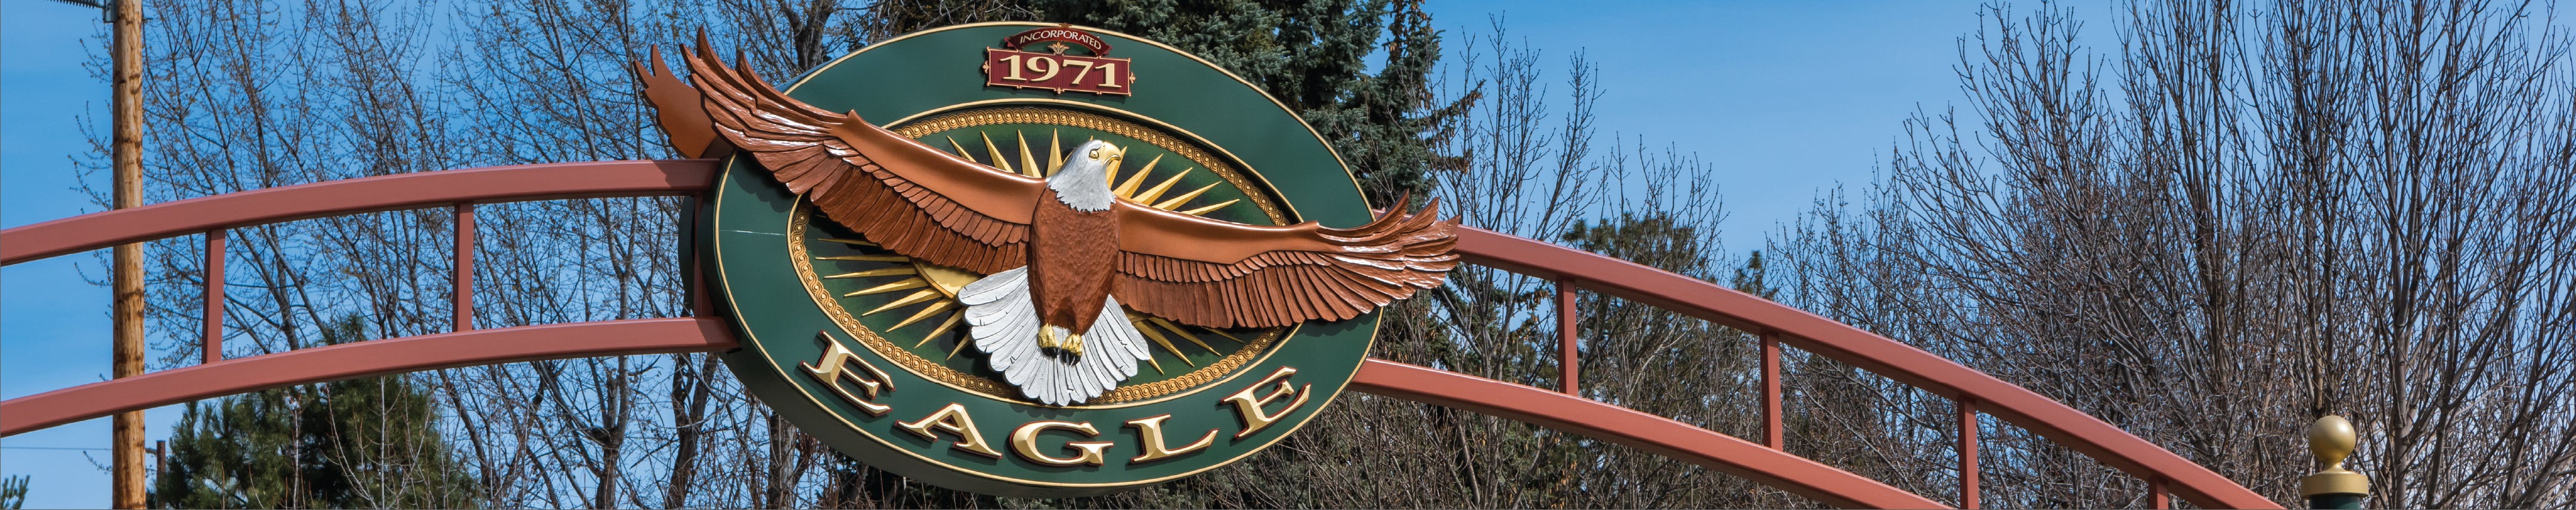 Entrance banner to Eagle, Idaho